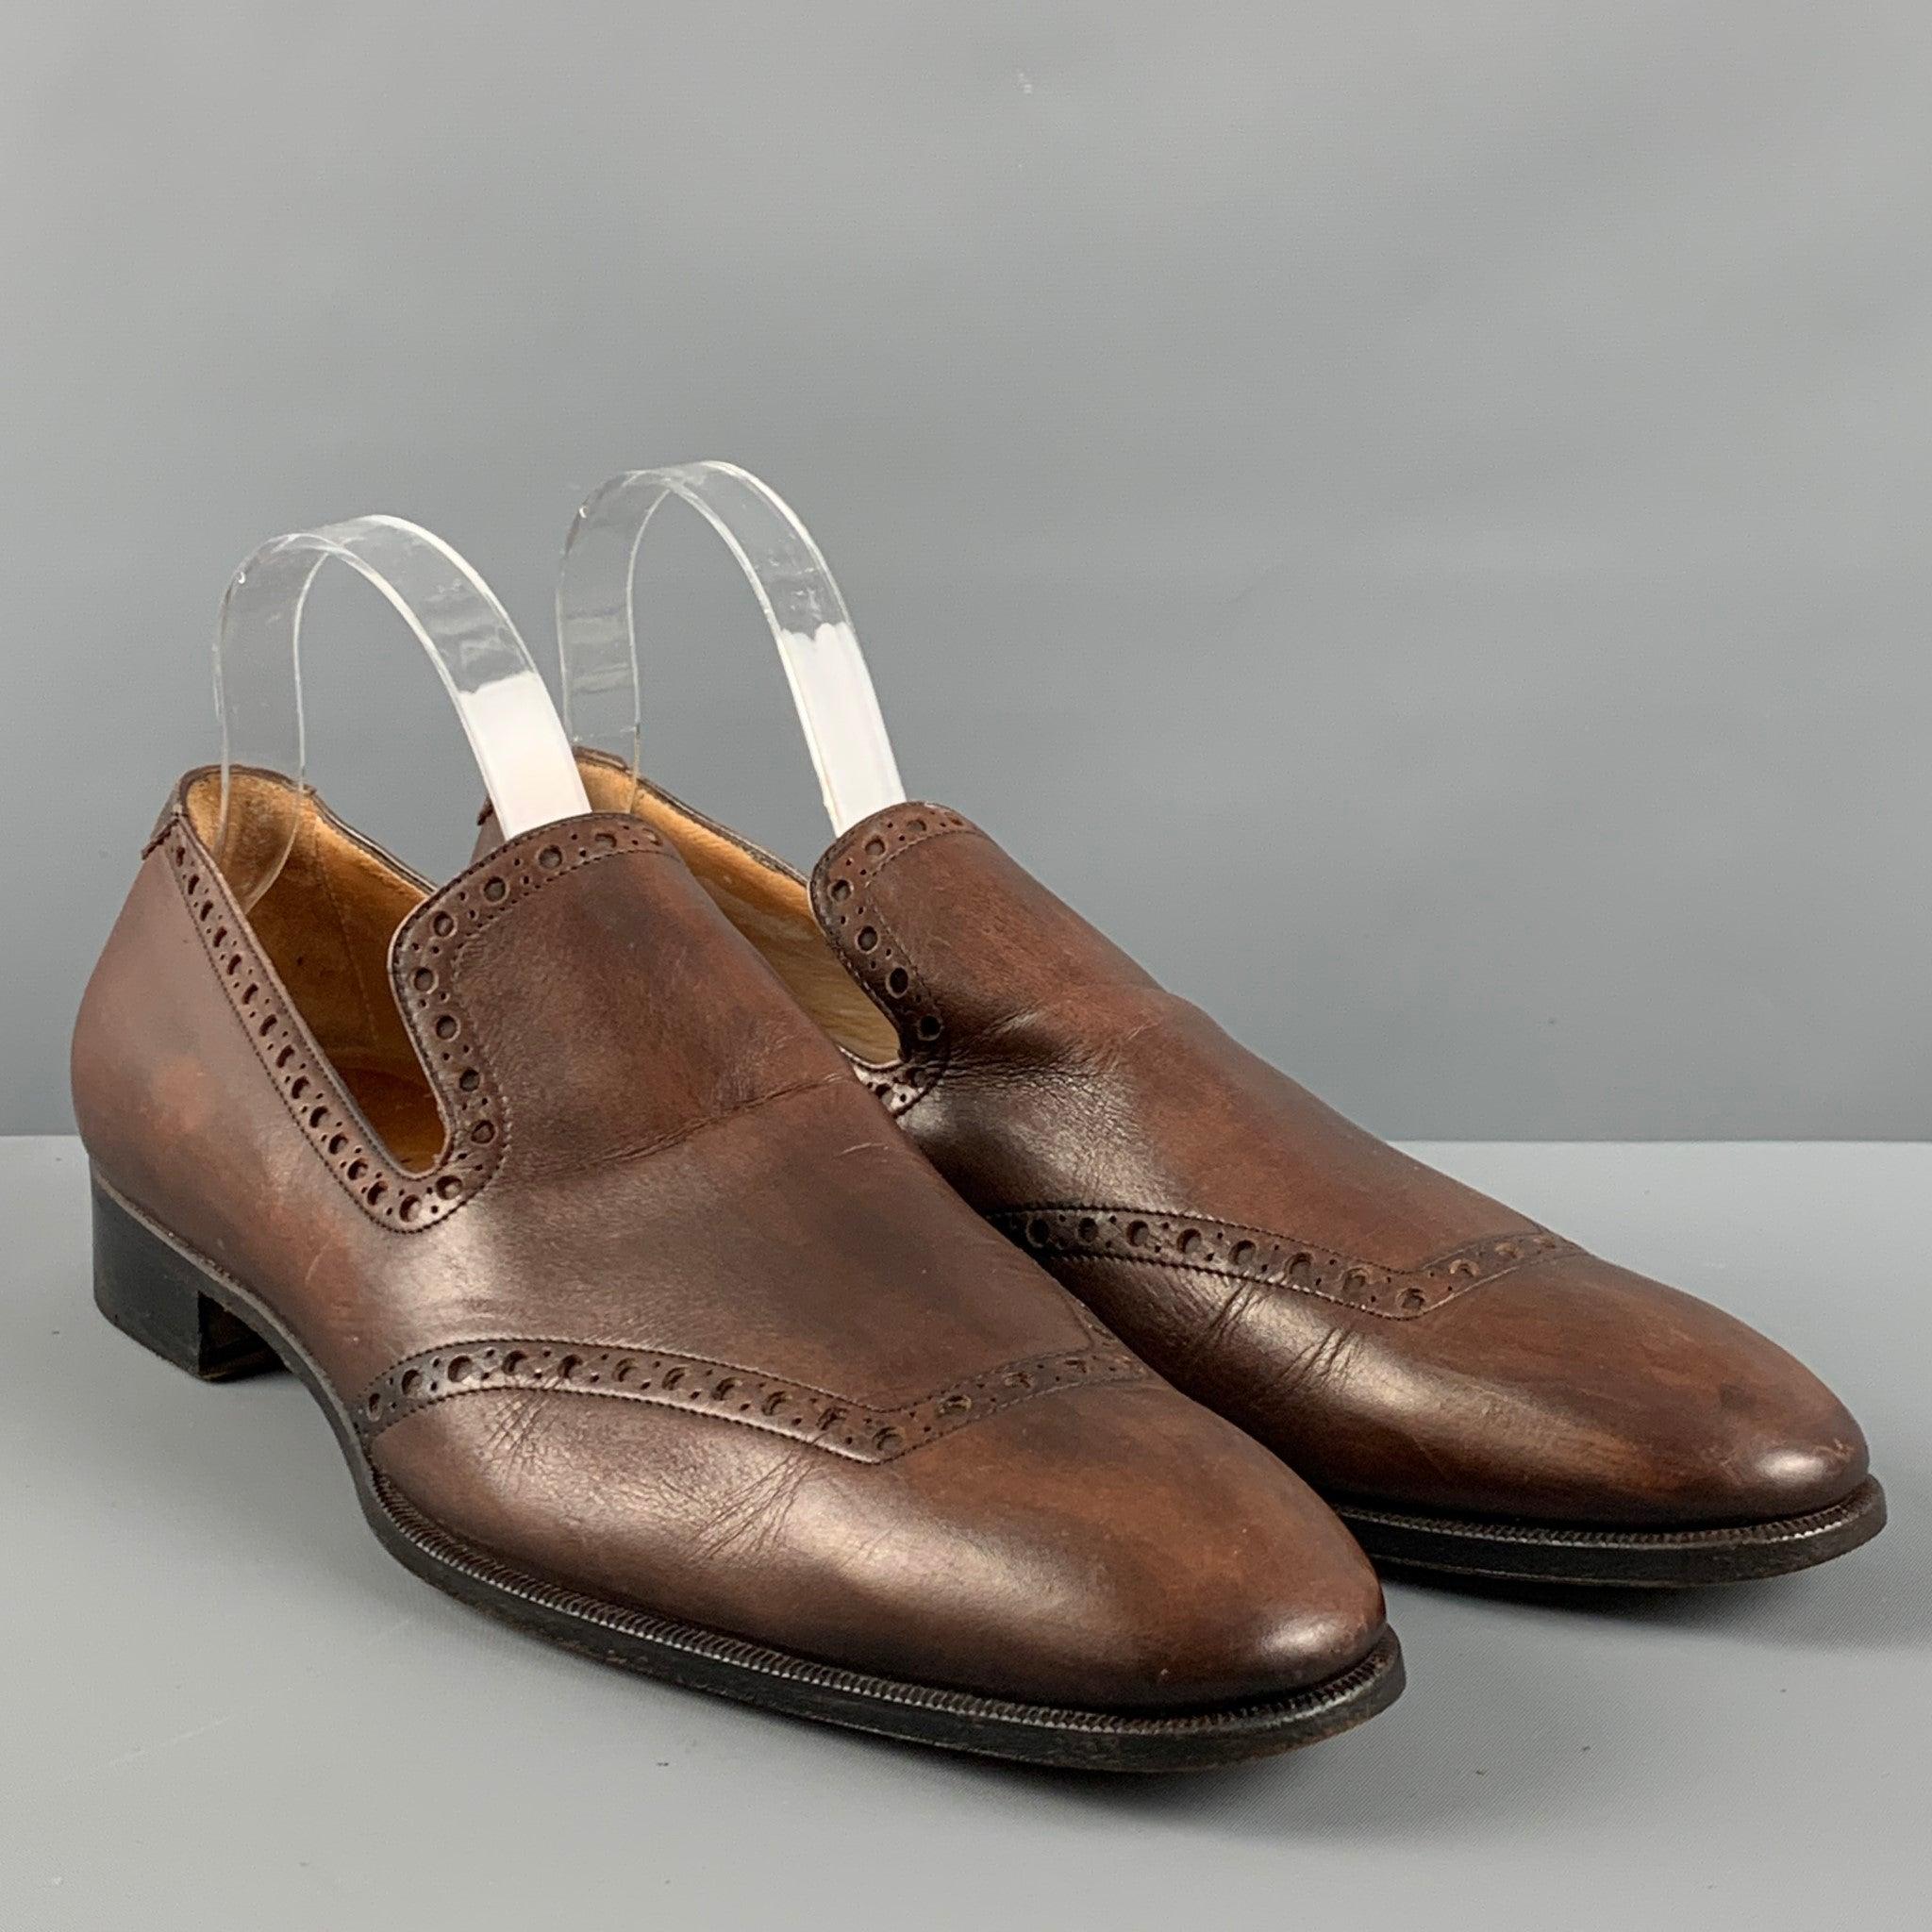 Les chaussures Yves SAINT LAURENT sont en cuir perforé marron, avec un bout en forme de cap et un style à enfiler. Fabriqué en Italie. Très bon état. Signes d'usure modérés. 

Marqué :   0214 43Semelle d'usure : 12.75 pouces  x 4,25 pouces  
  
  
